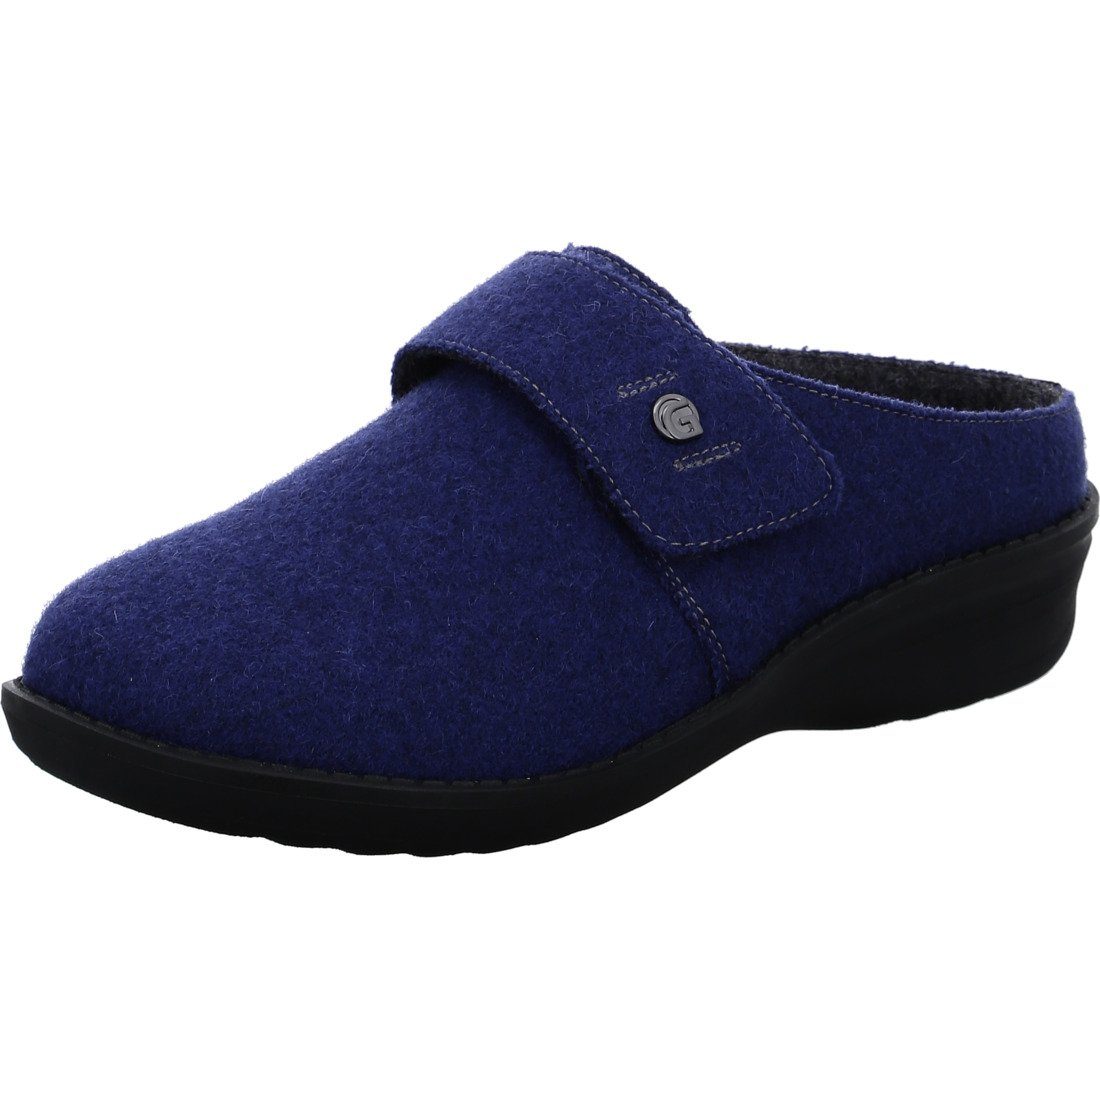 Ganter Ganter Schuhe, Pantolette Hera - Merinowolle Pantolette blau 047615